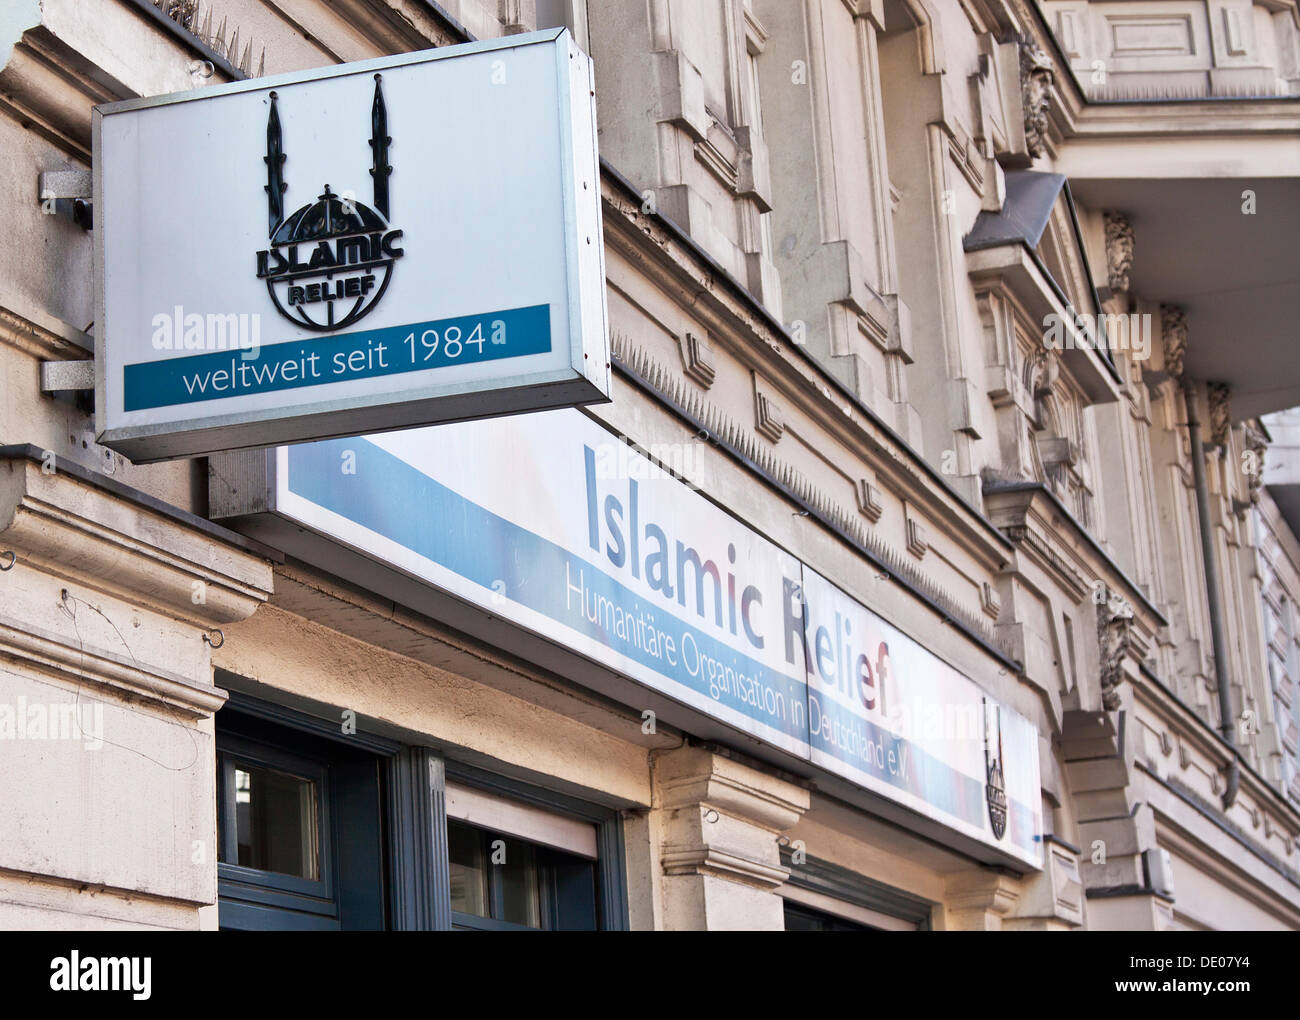 Façade, office de tourisme de Islamic Relief, une organisation de secours et de développement international, Berlin Banque D'Images